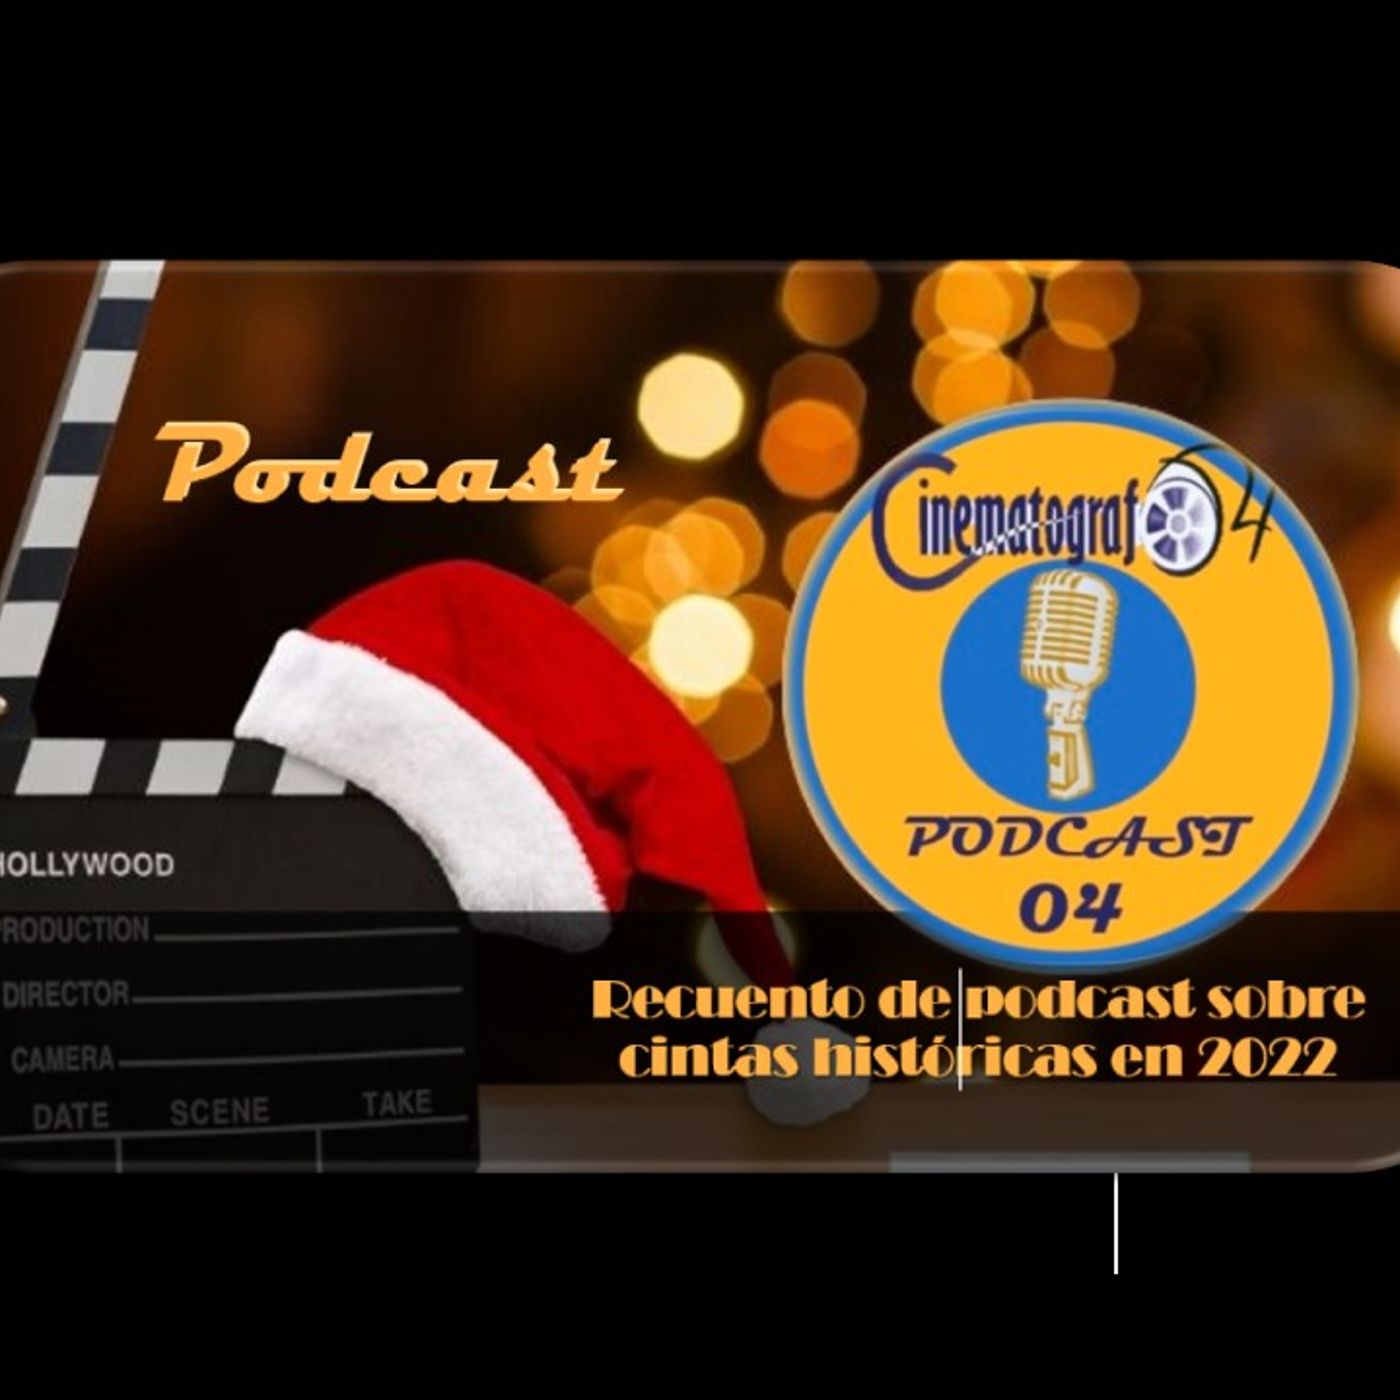 Episodio 216 - Recuento de podcast sobre cintas históricas de 2022